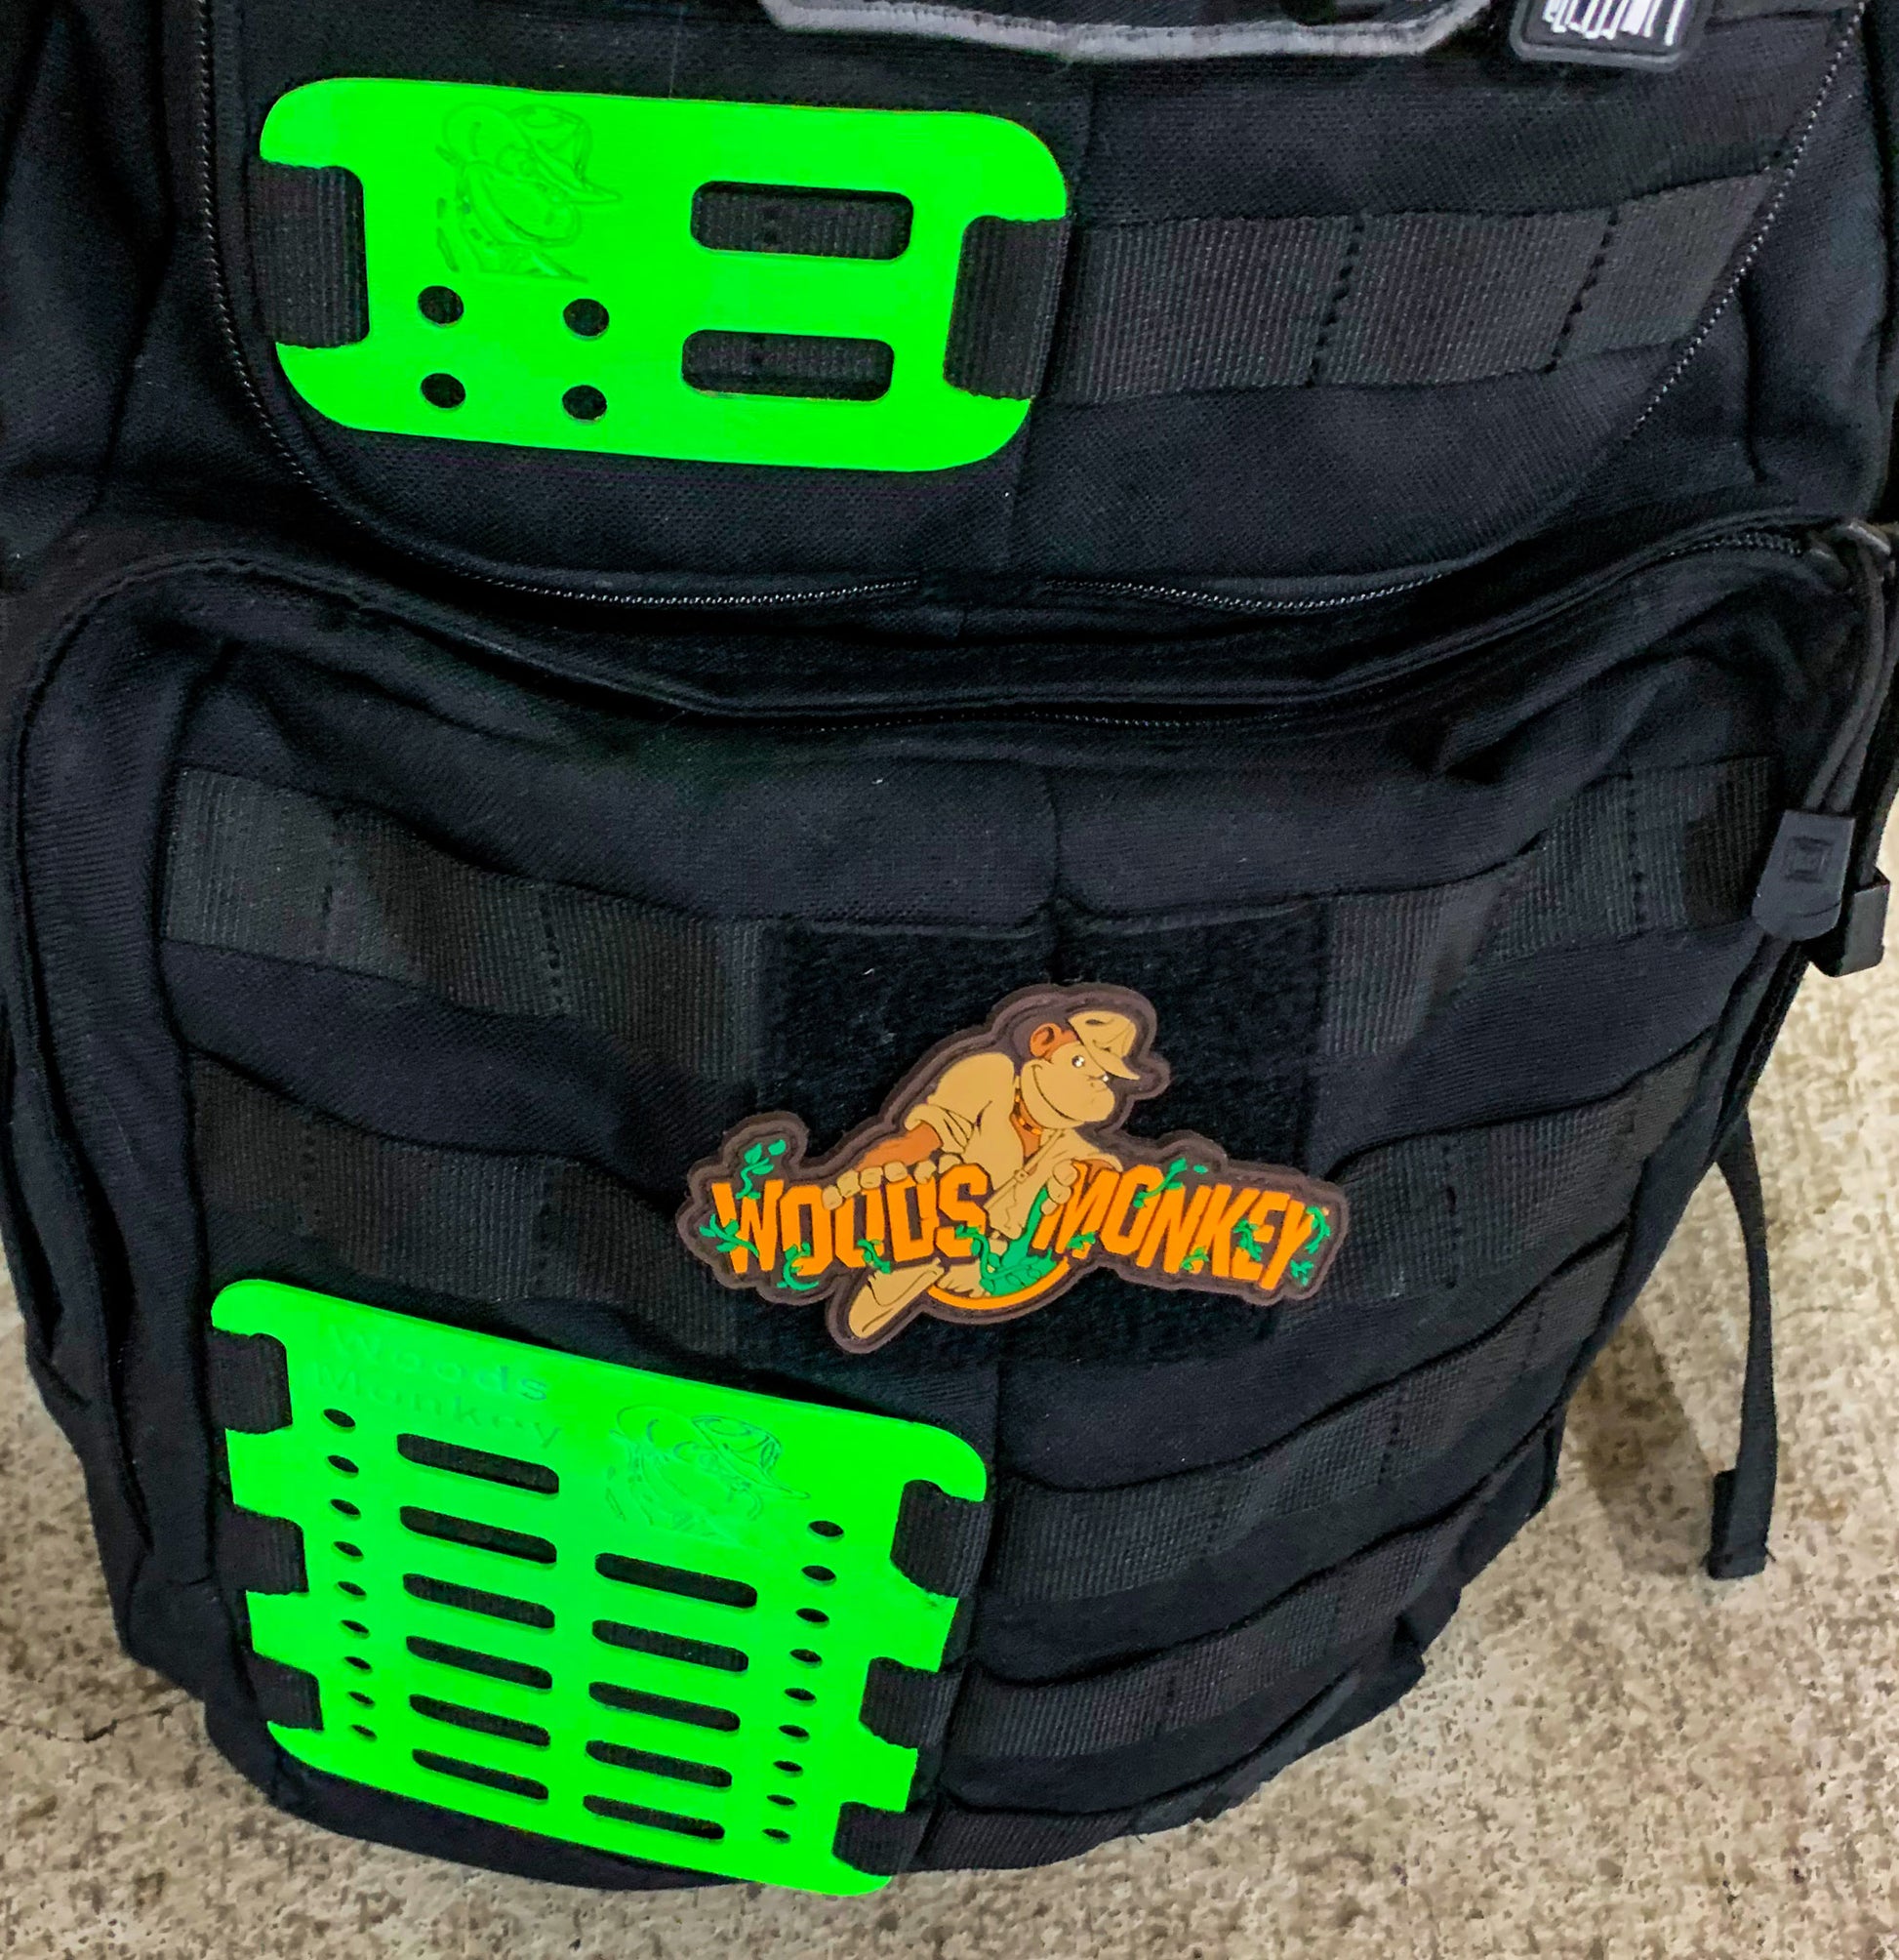 Woods Monkey Mini Monkey Board and Medium Monkey Board on a backpack